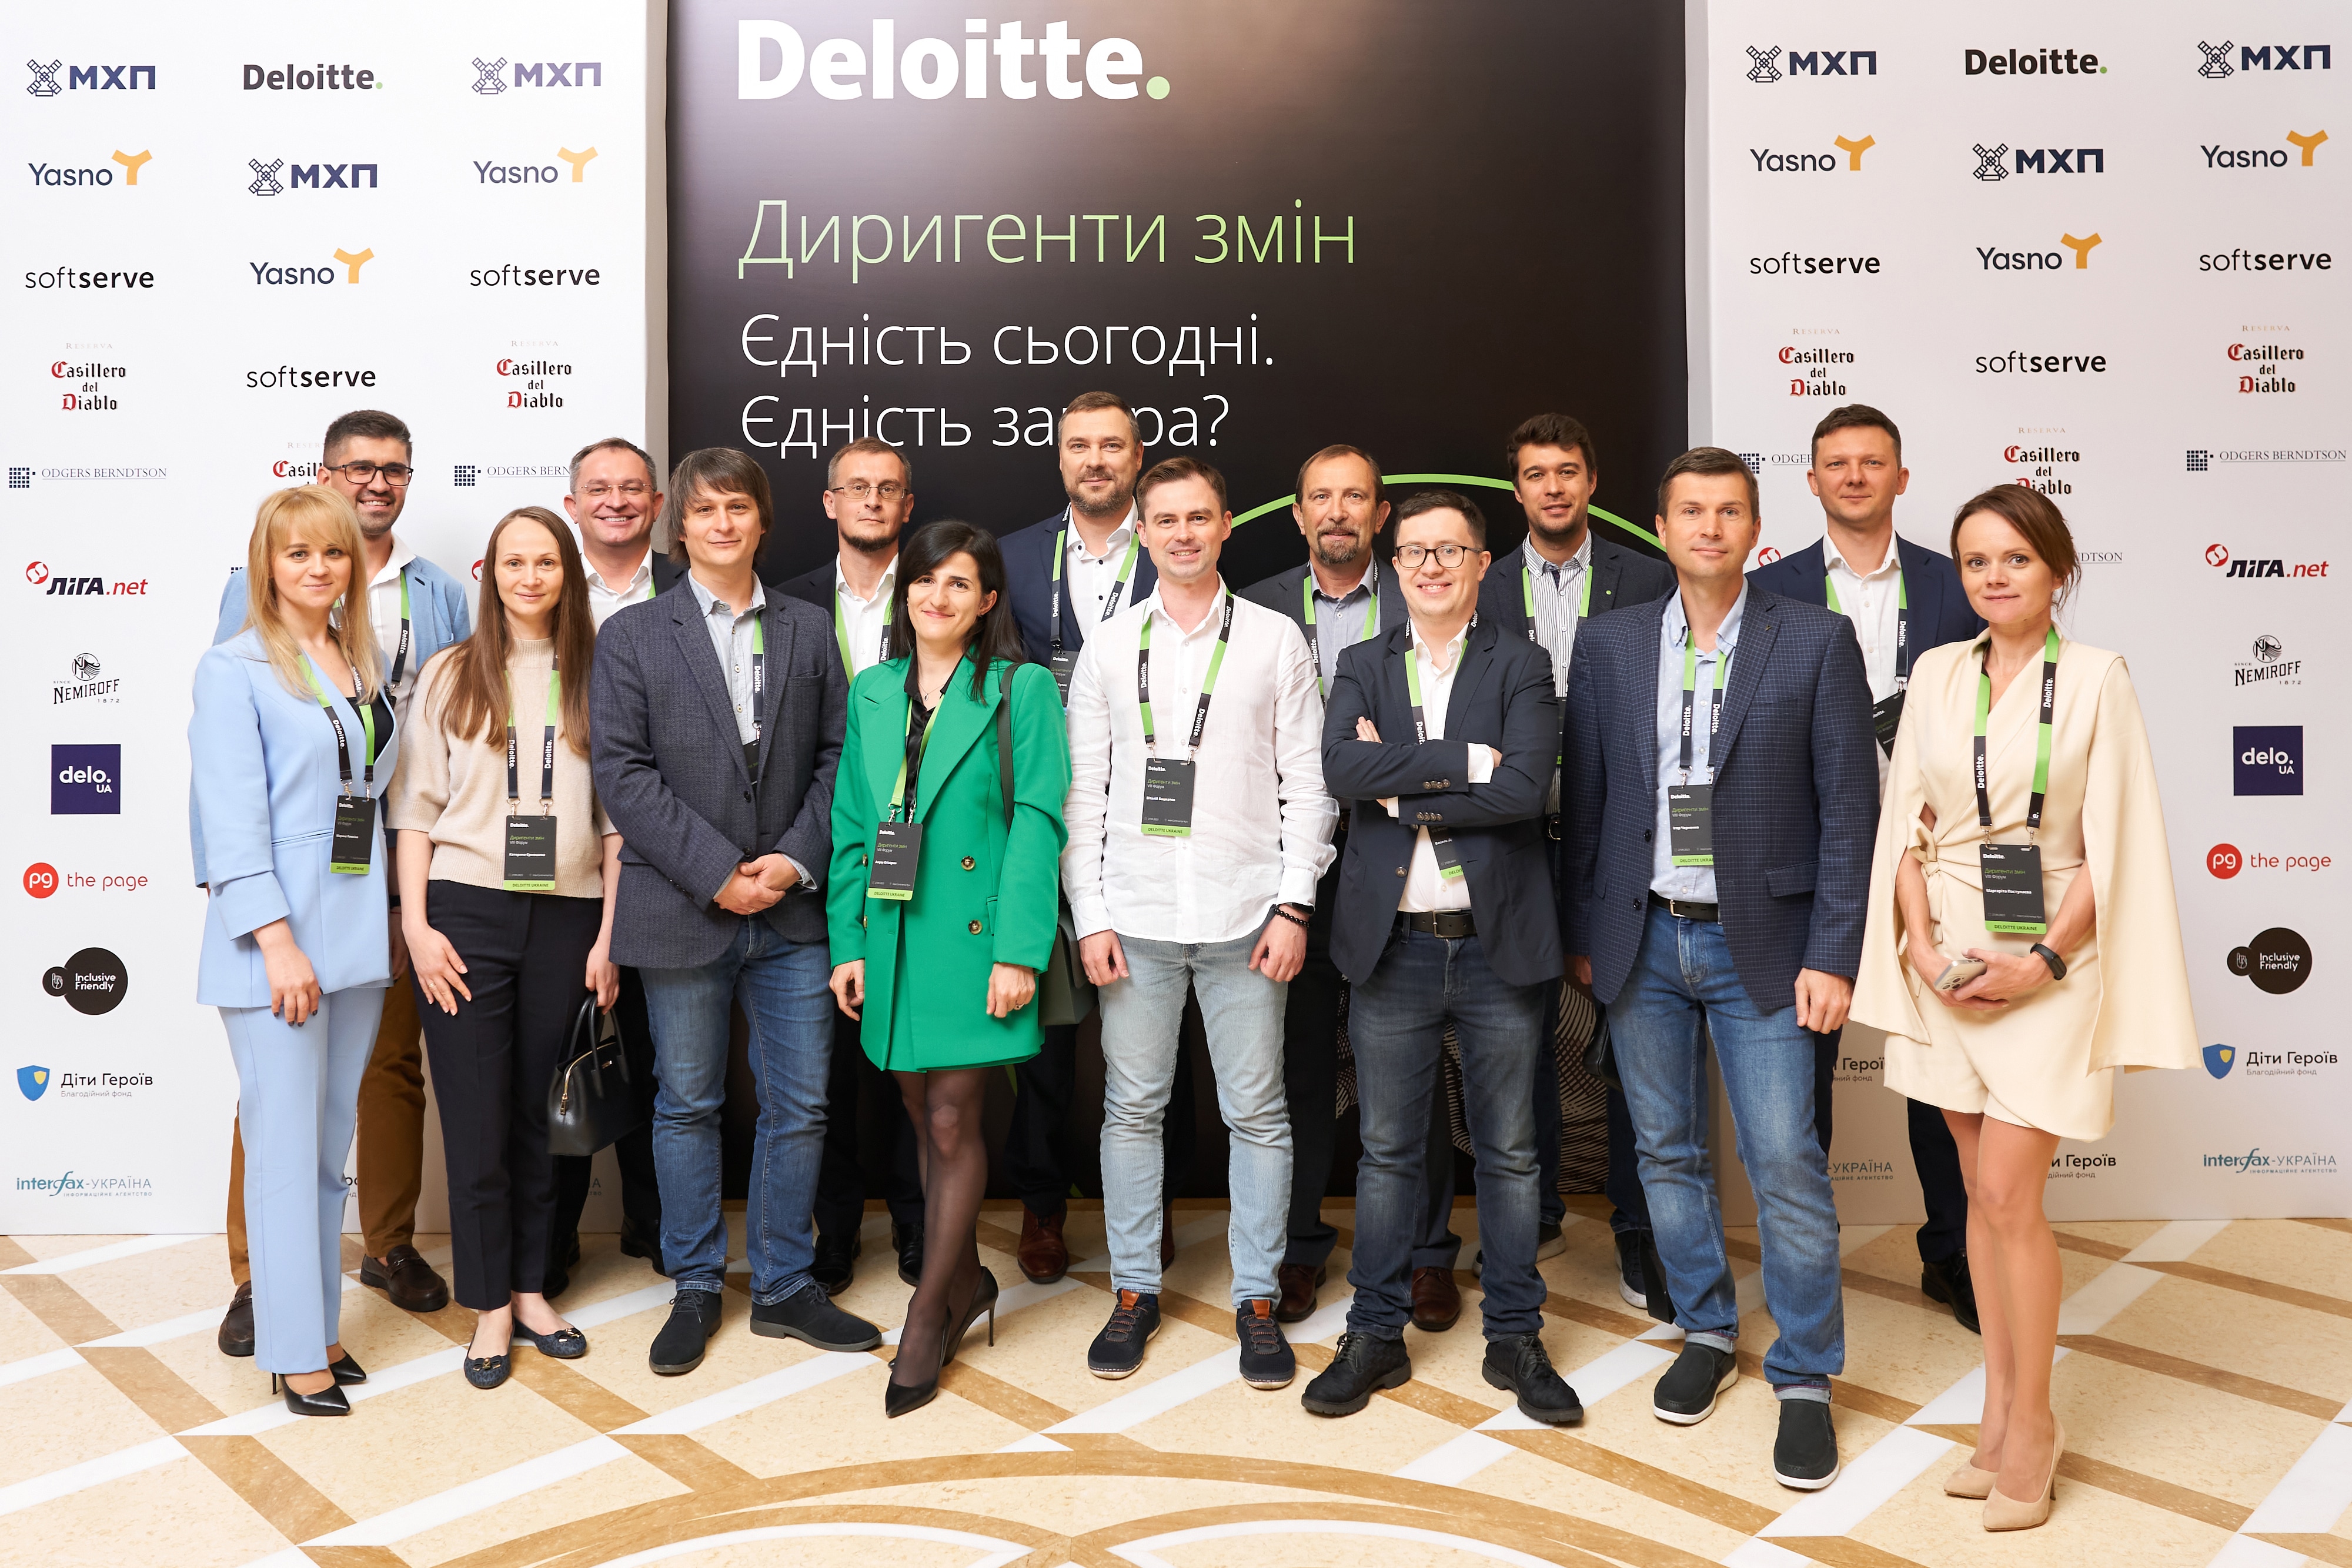 Deloitte Ukraine Partners and Directors